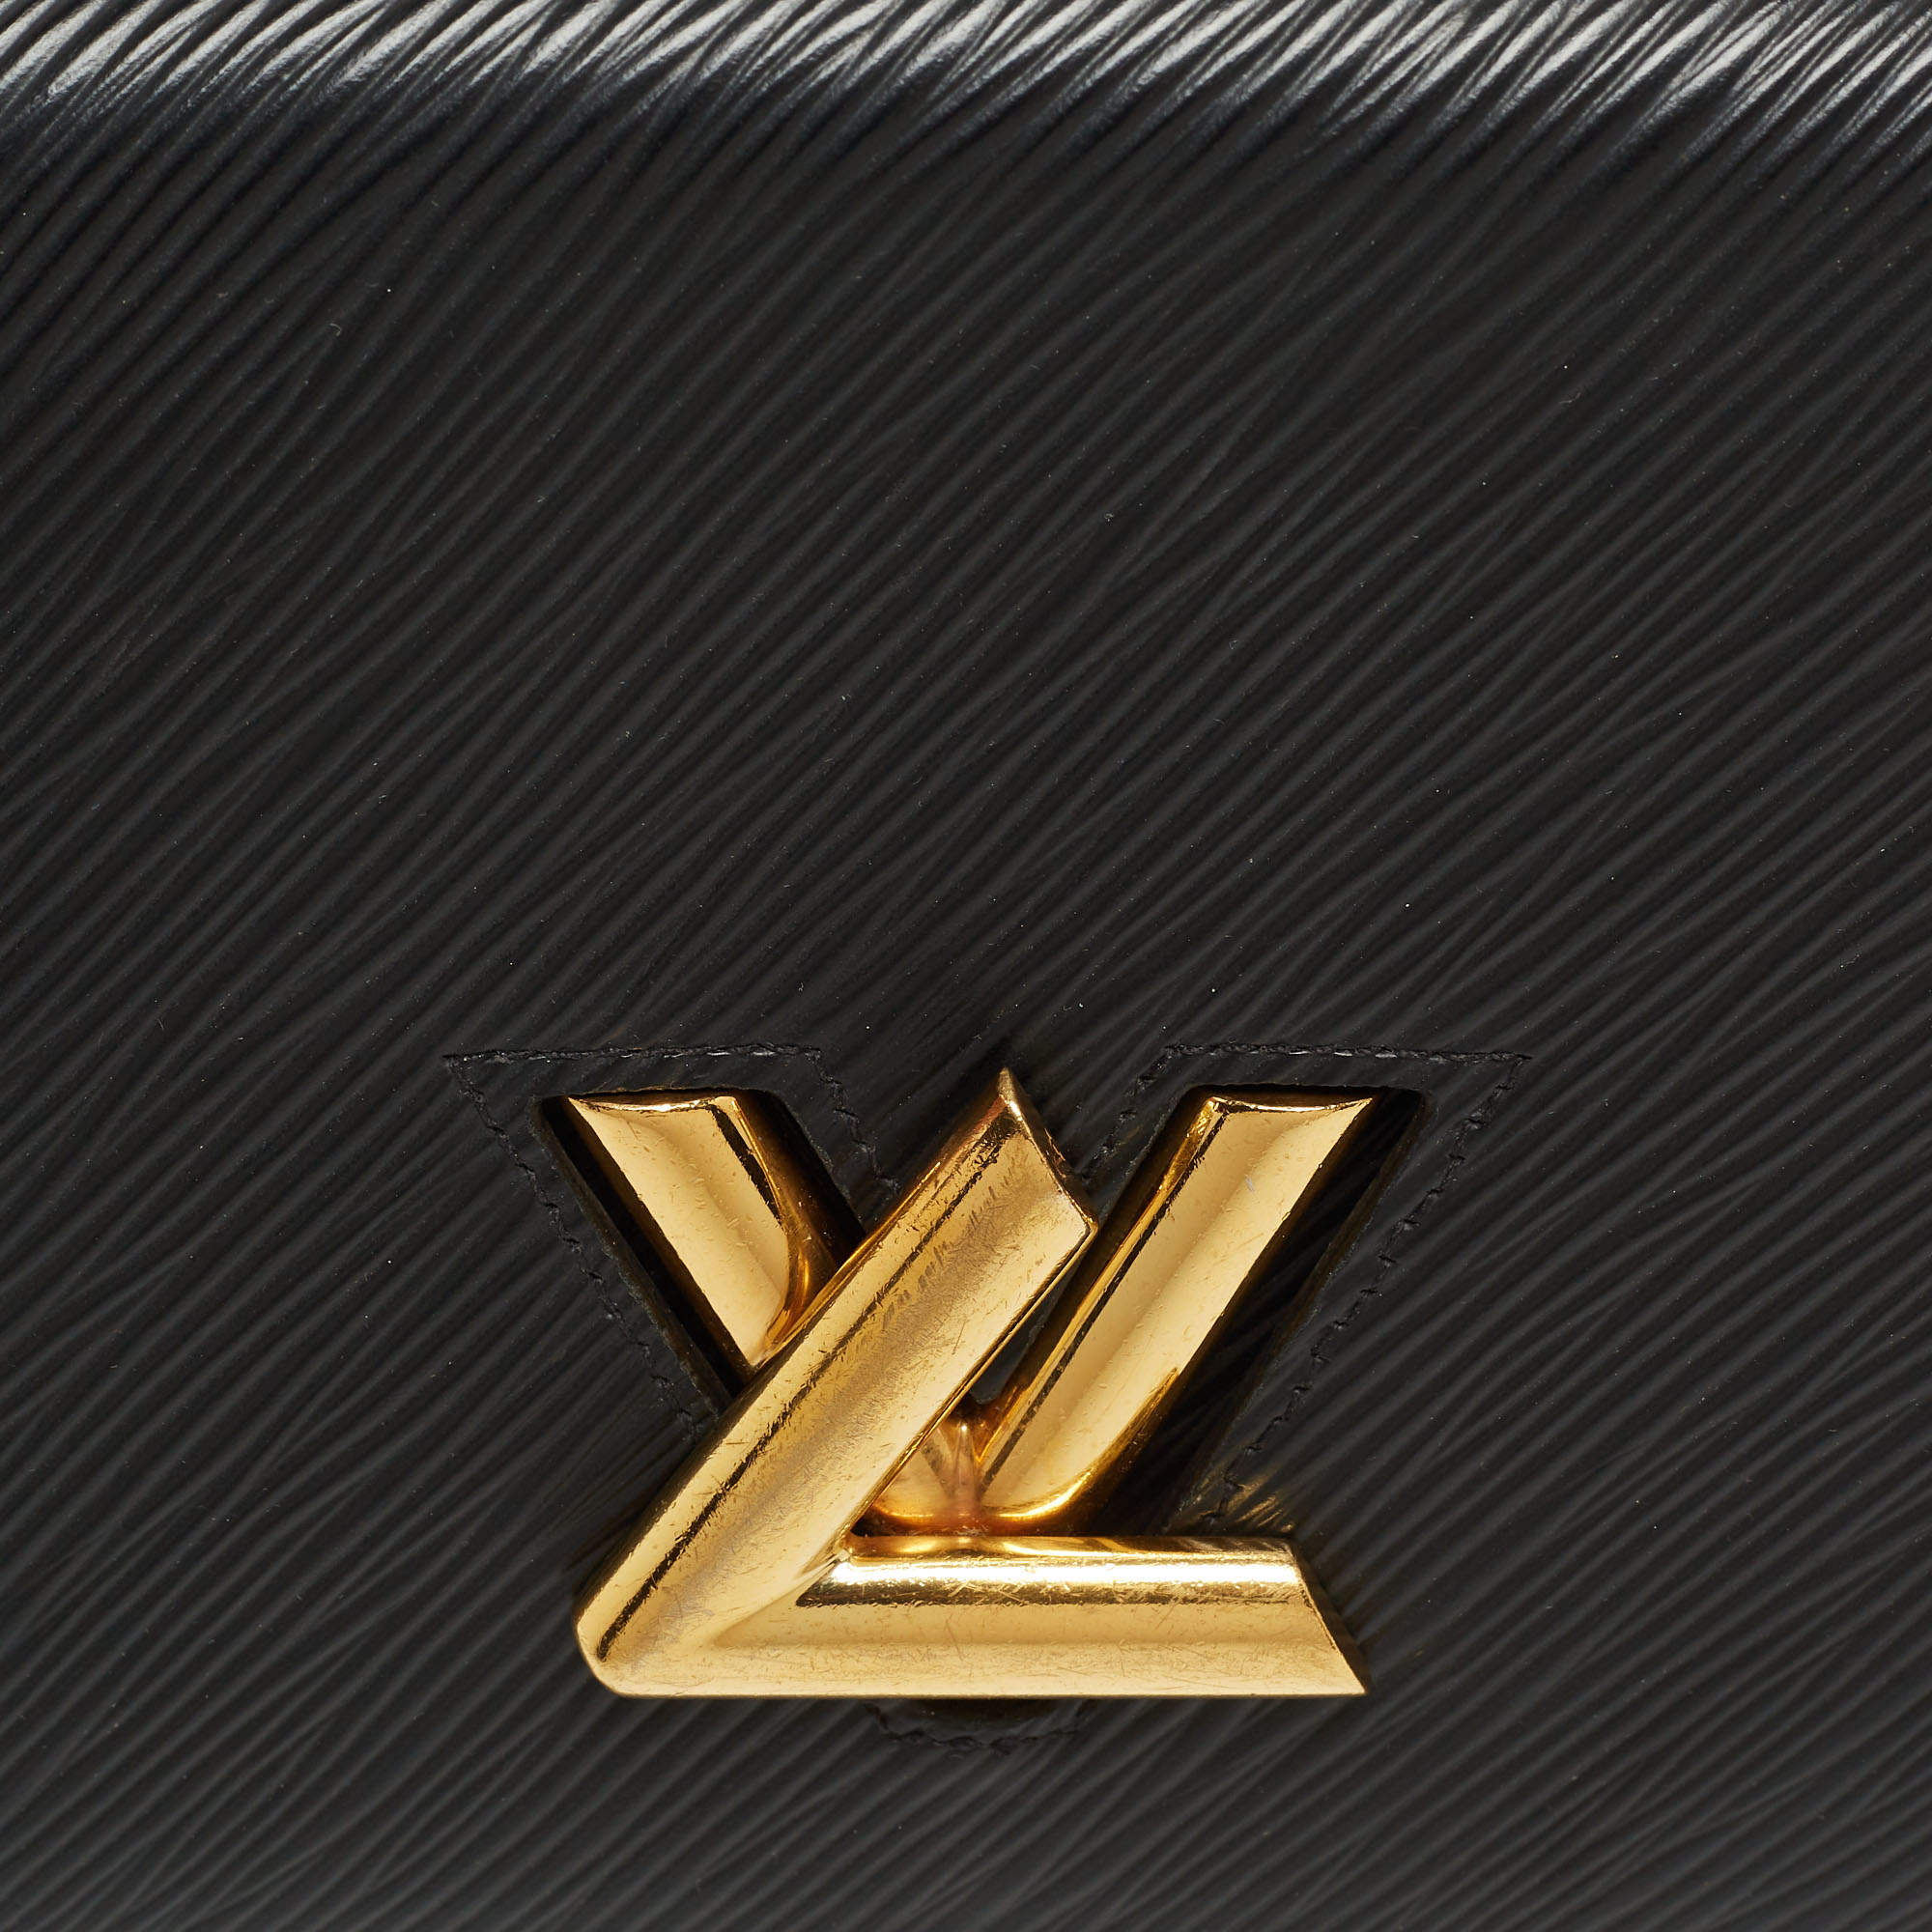 Louis Vuitton TWIST Twist belt chain wallet (M68750)